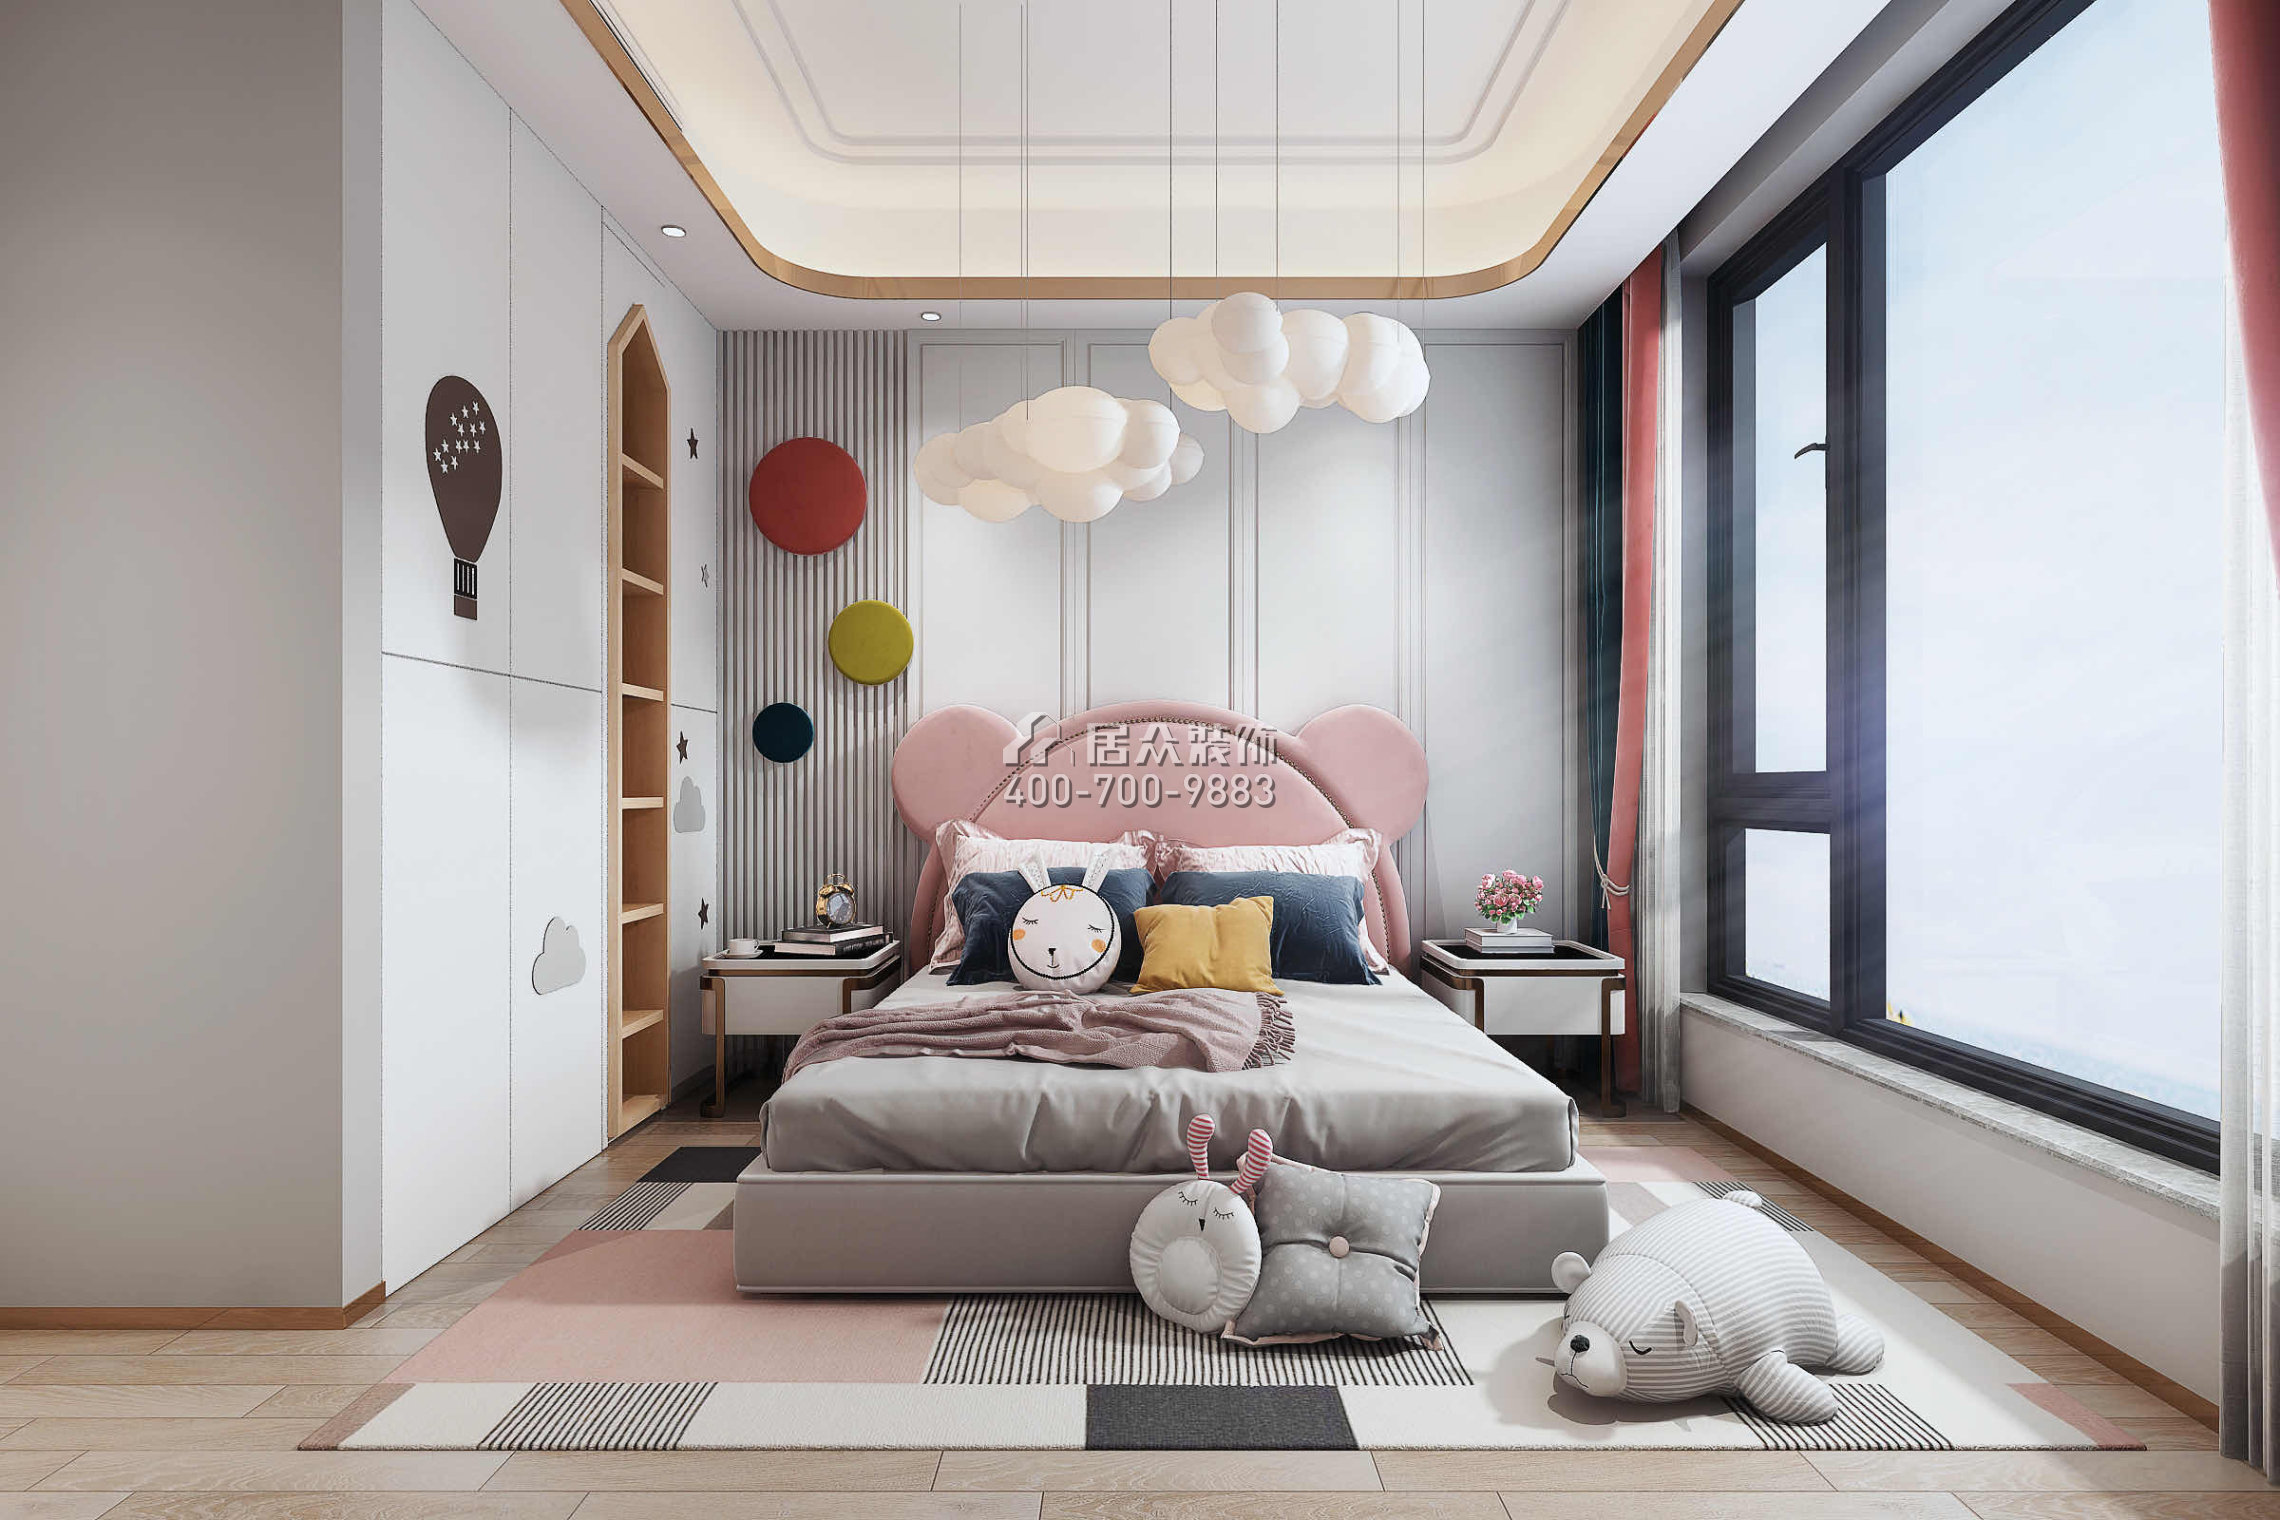 華爾頓1275158平方米中式風格平層戶型臥室裝修效果圖